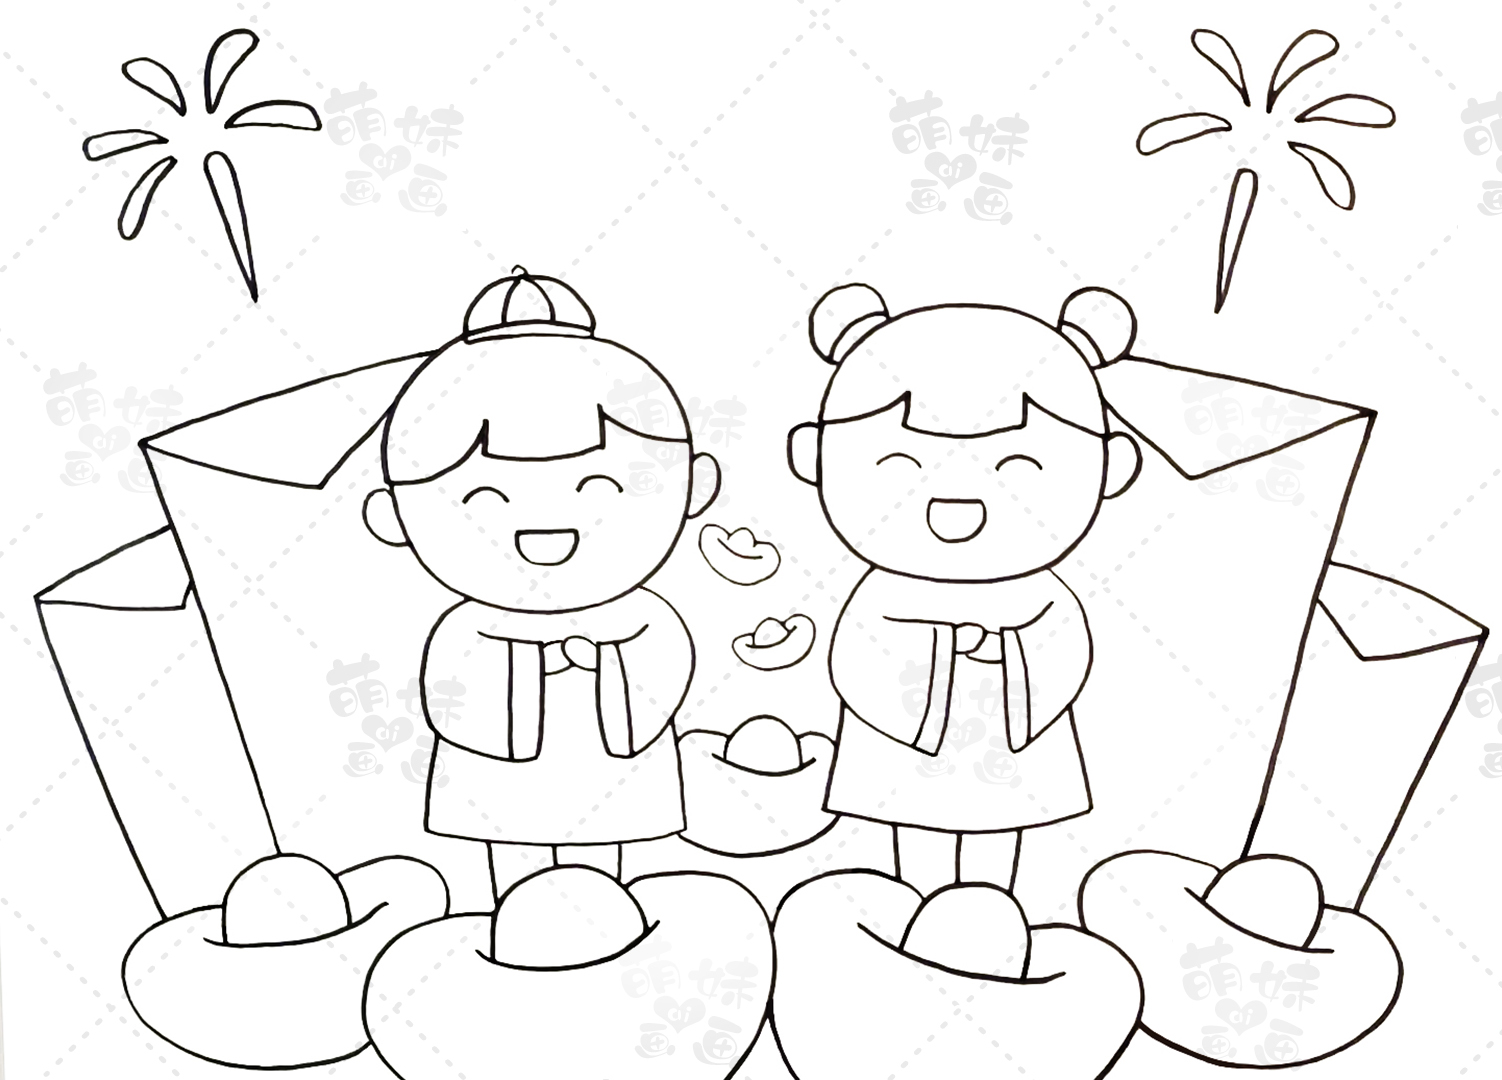 春节画面简笔画卡通版图片